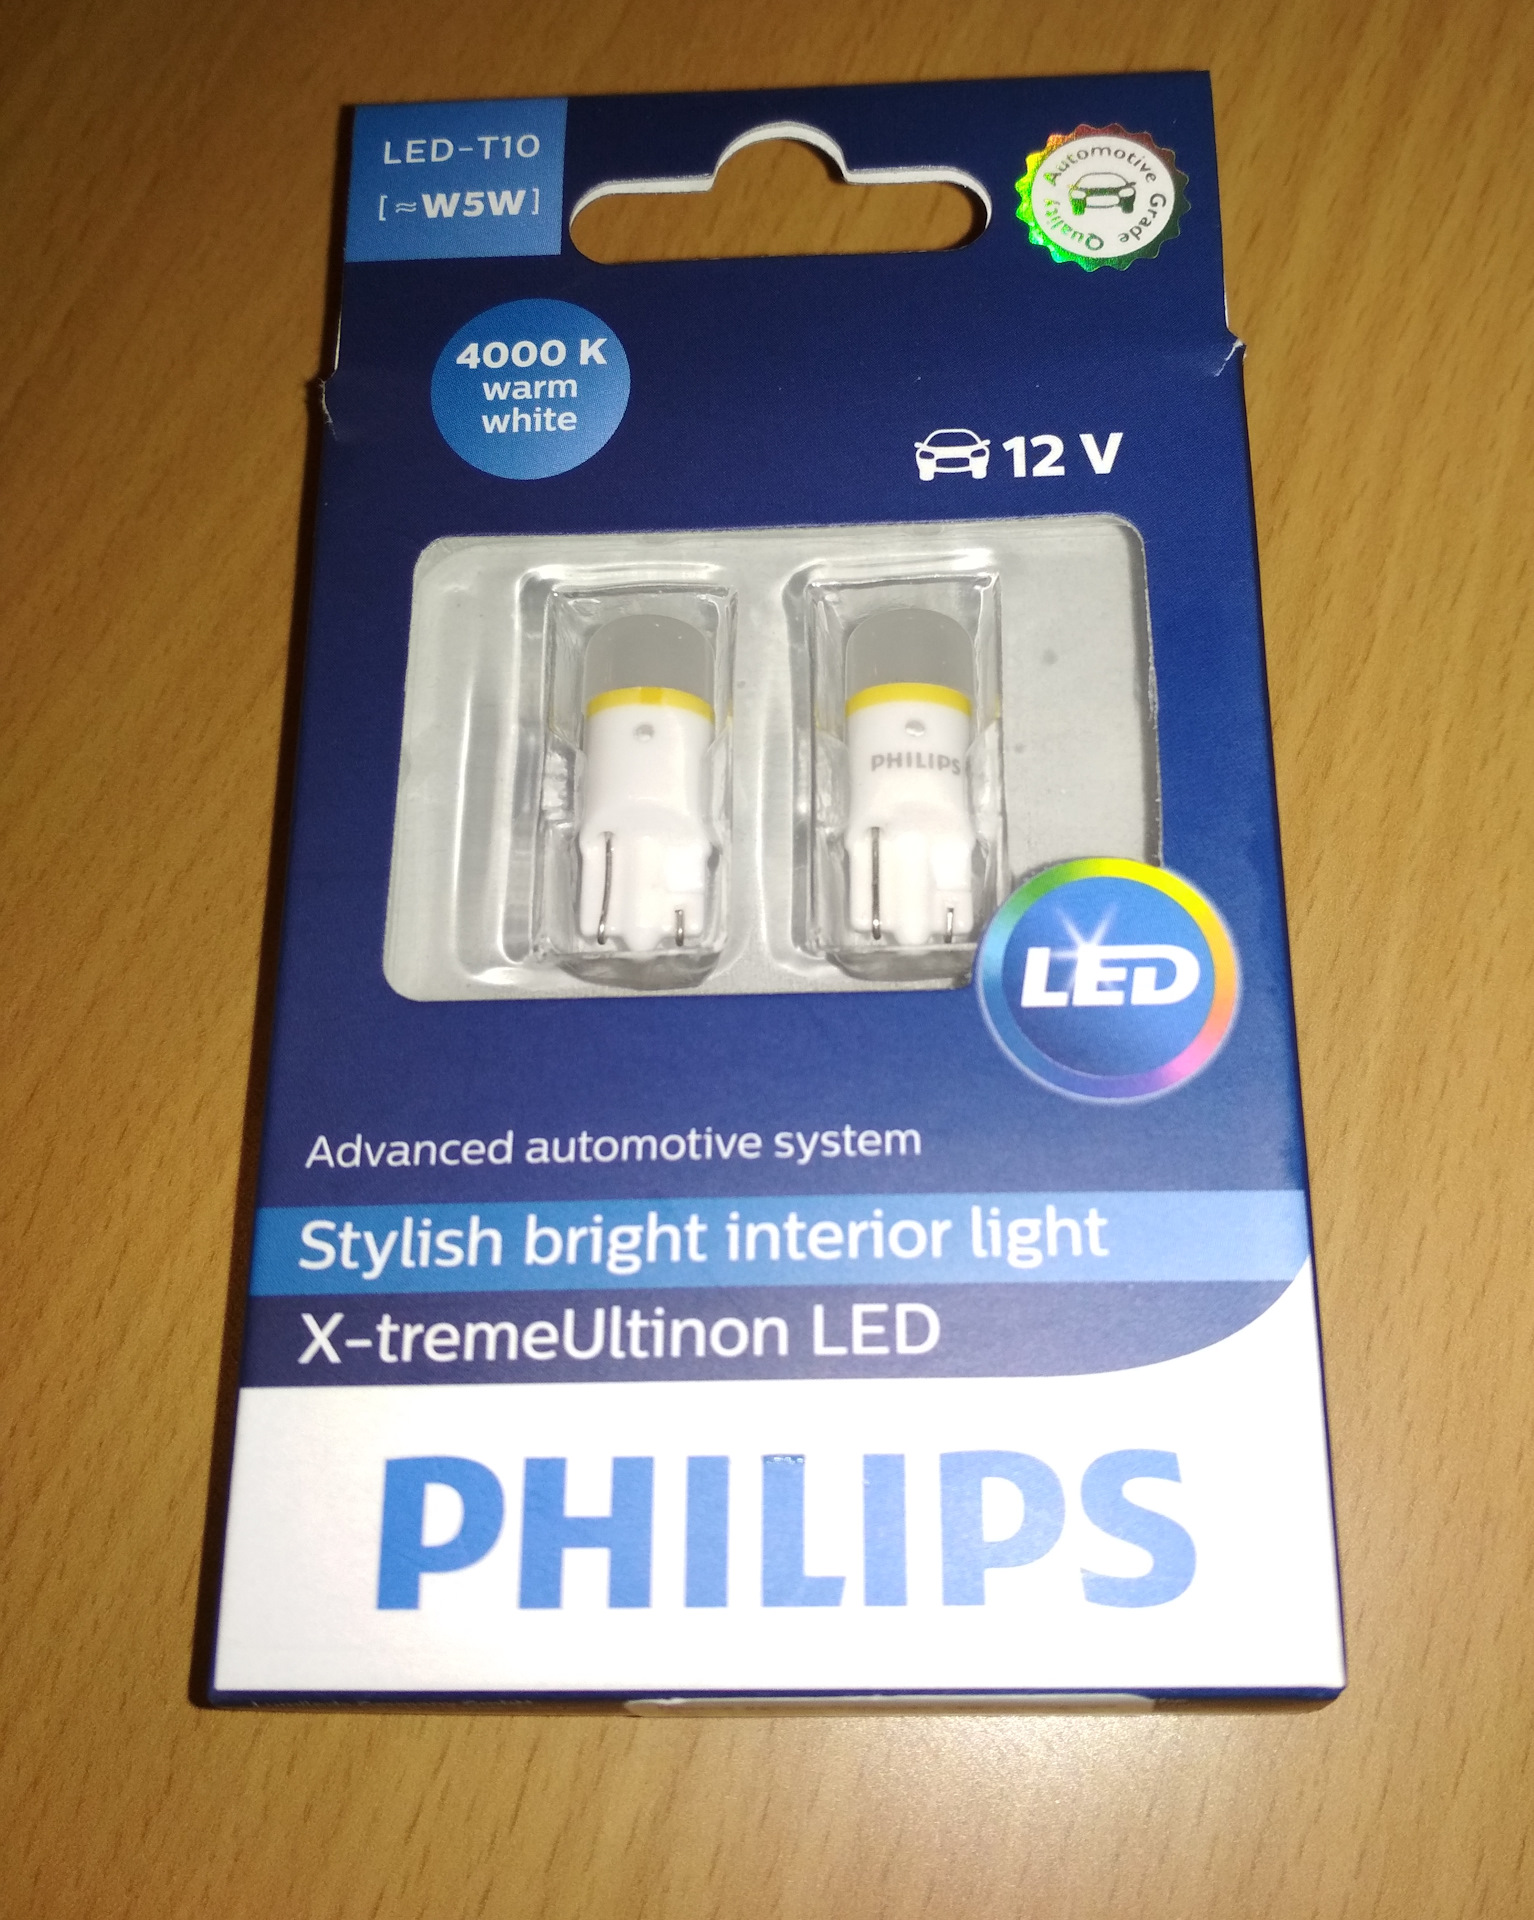 Габариты филипс. Лампочки w5w светодиодная Philips. Светодиодные лампы в габариты w5w Philips. Светодиодные лампочки в габариты Филипс. Светодиодная лампа "Philips" 5w led 4000k.